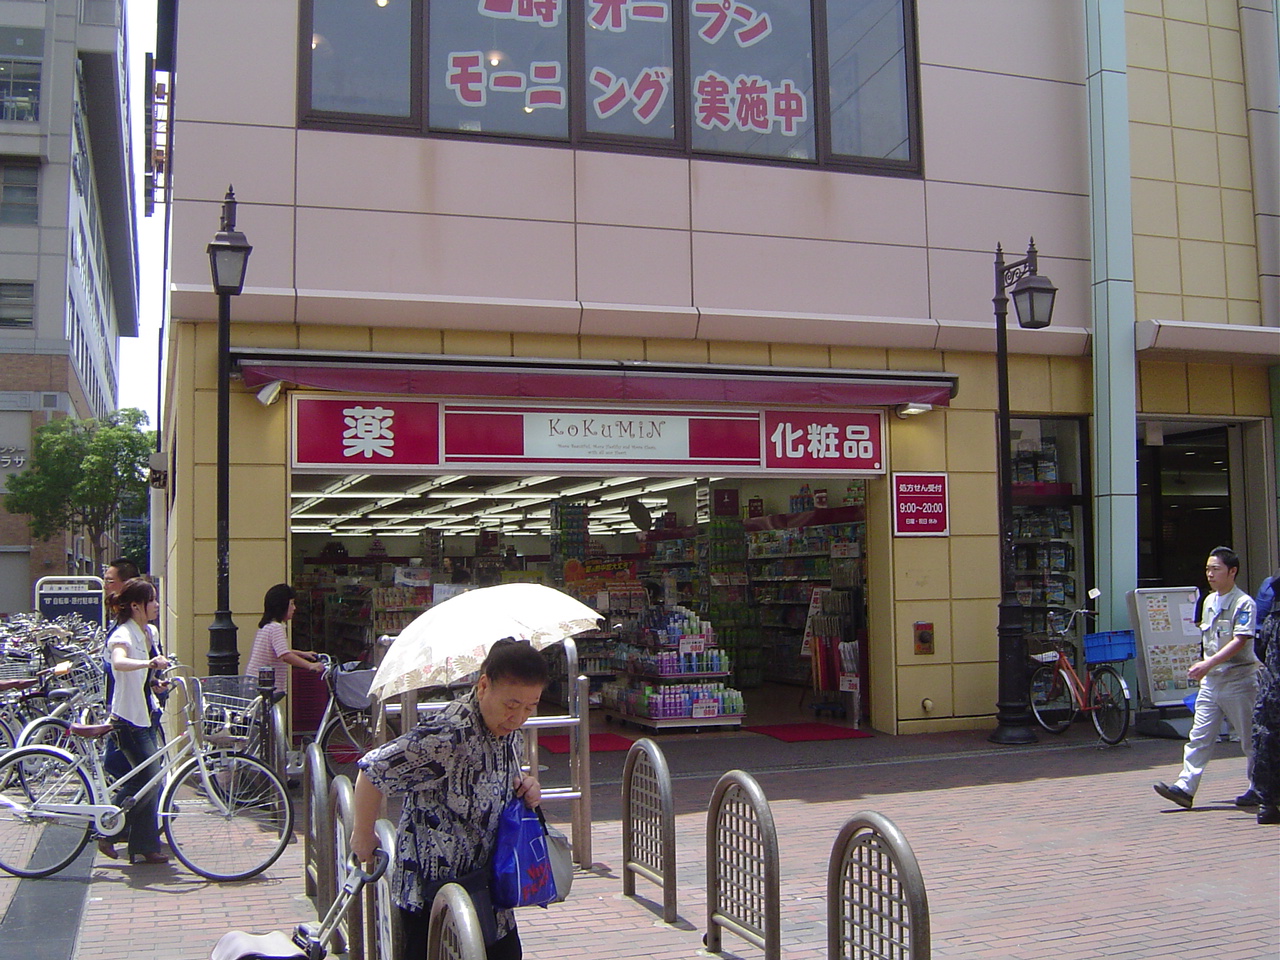 Dorakkusutoa. Kokumin Hyogo Station shop 596m until (drugstore)